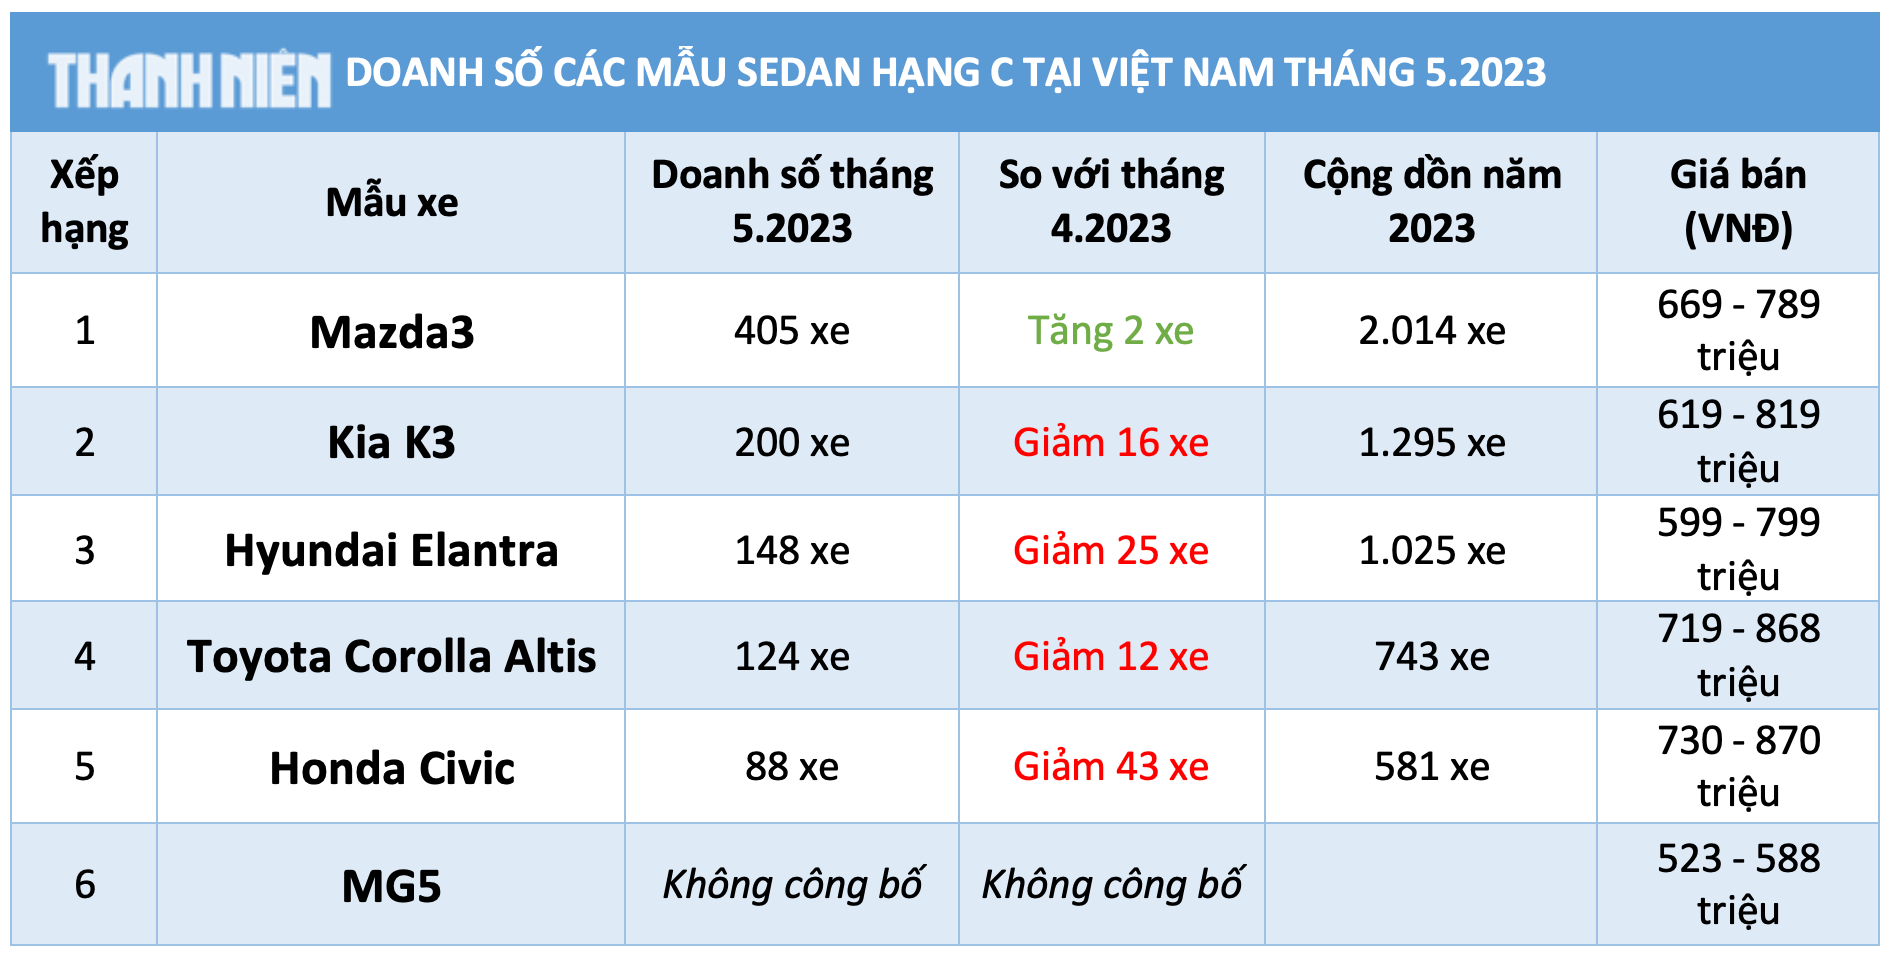 Doanh số tăng 2 xe Mazda3 vẫn dẫn đầu phân khúc Sedan hạng C tại Việt Nam - Ảnh 5.